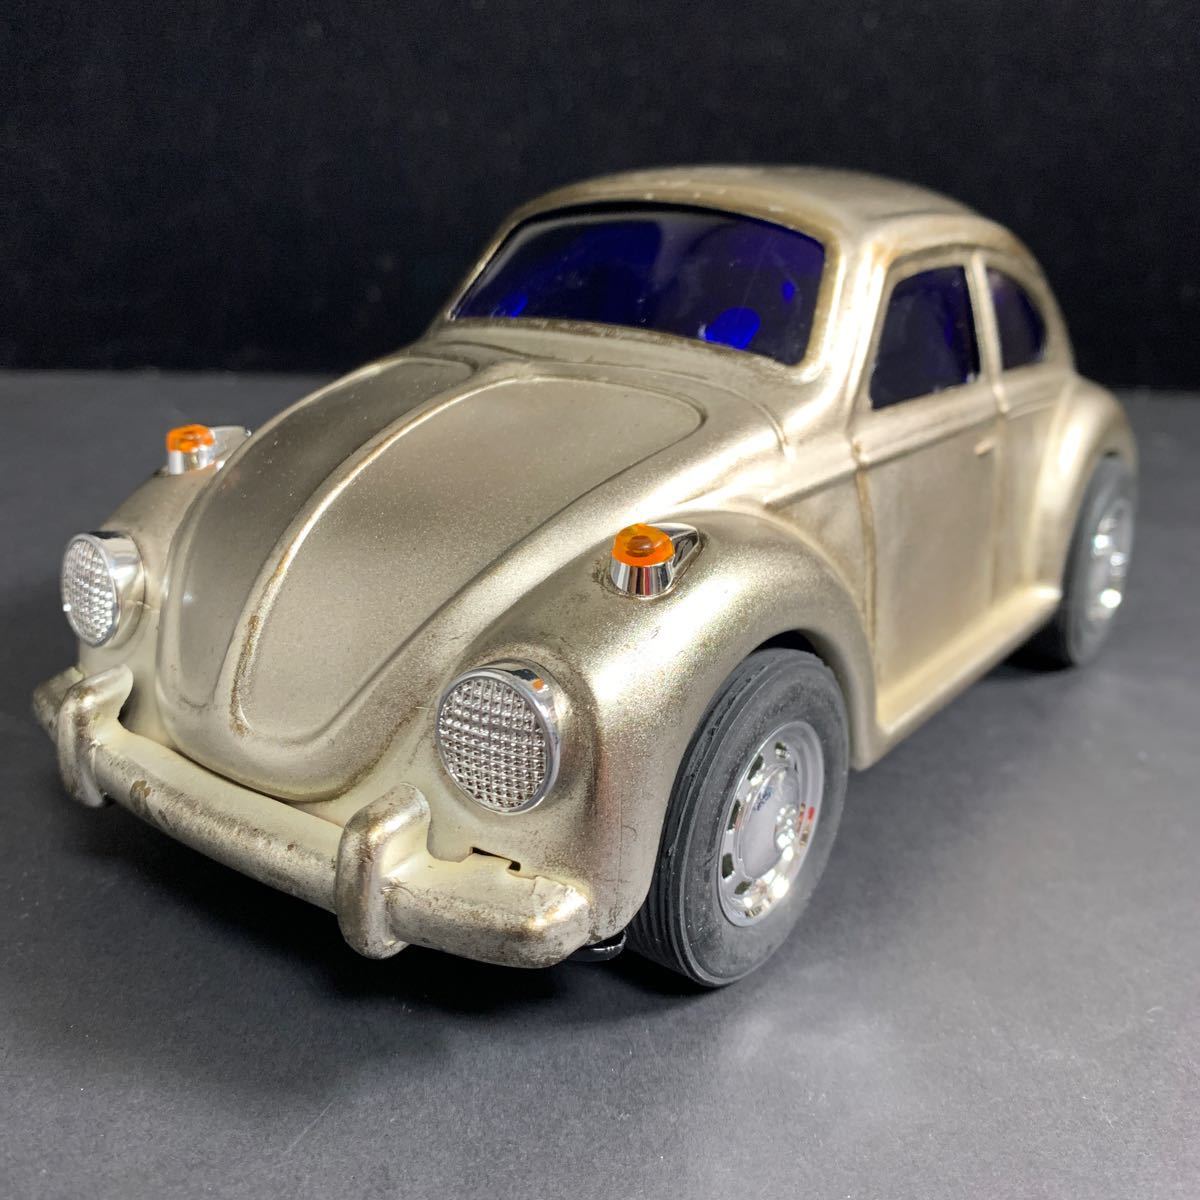 ブリキ製 VW Volkswagen Beetle フォルクスワーゲン ビートル 全長約21.5㎝ ミニカー 昭和玩具 外箱無し現状品 メーカー・スケール不明_画像1